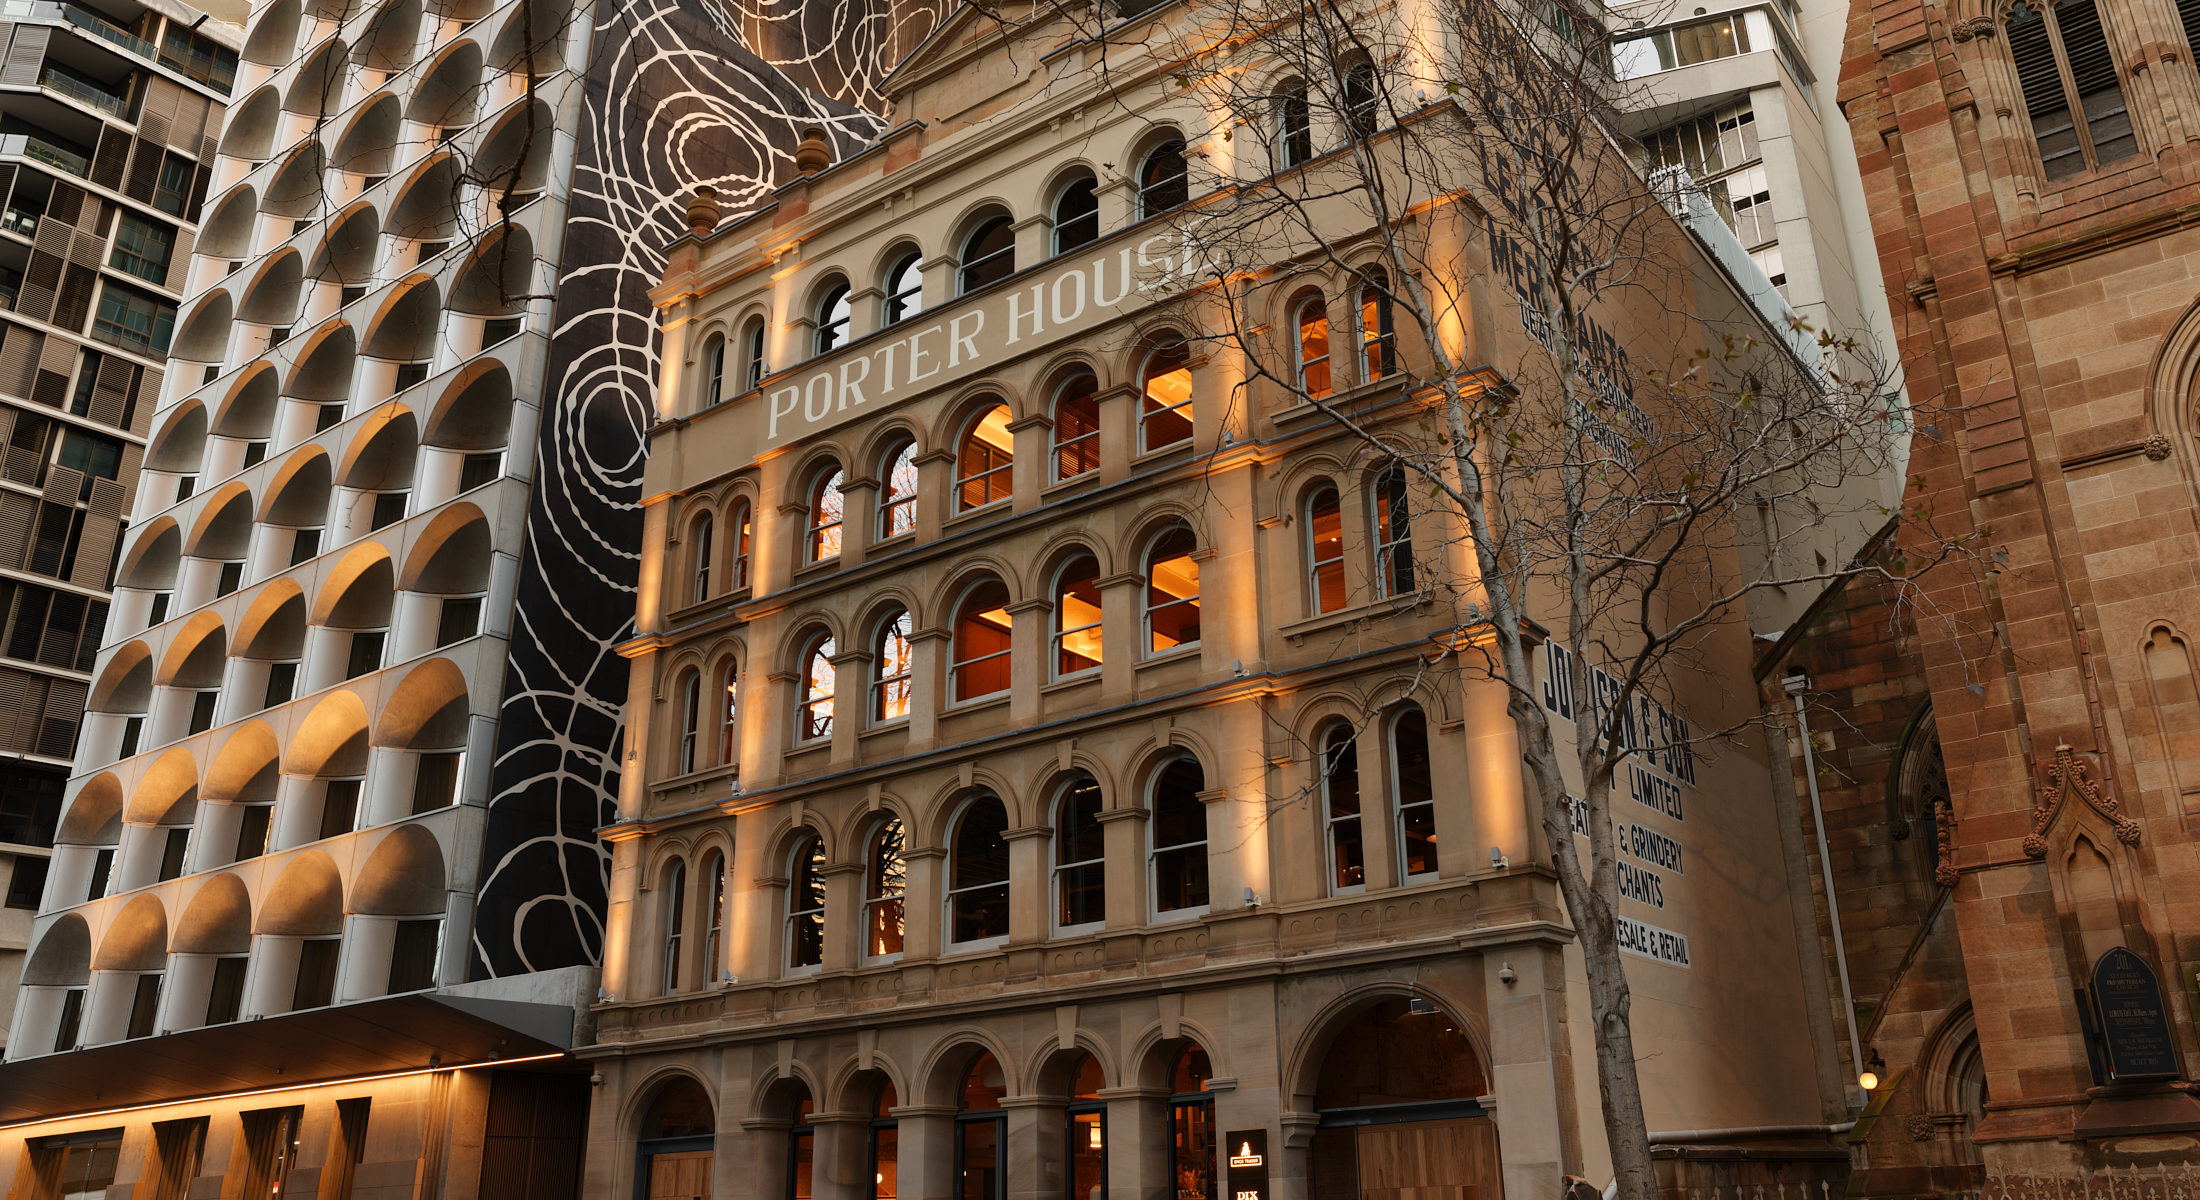 The Porter House Hotel | Sydney Hotel | Accommodation Sydney